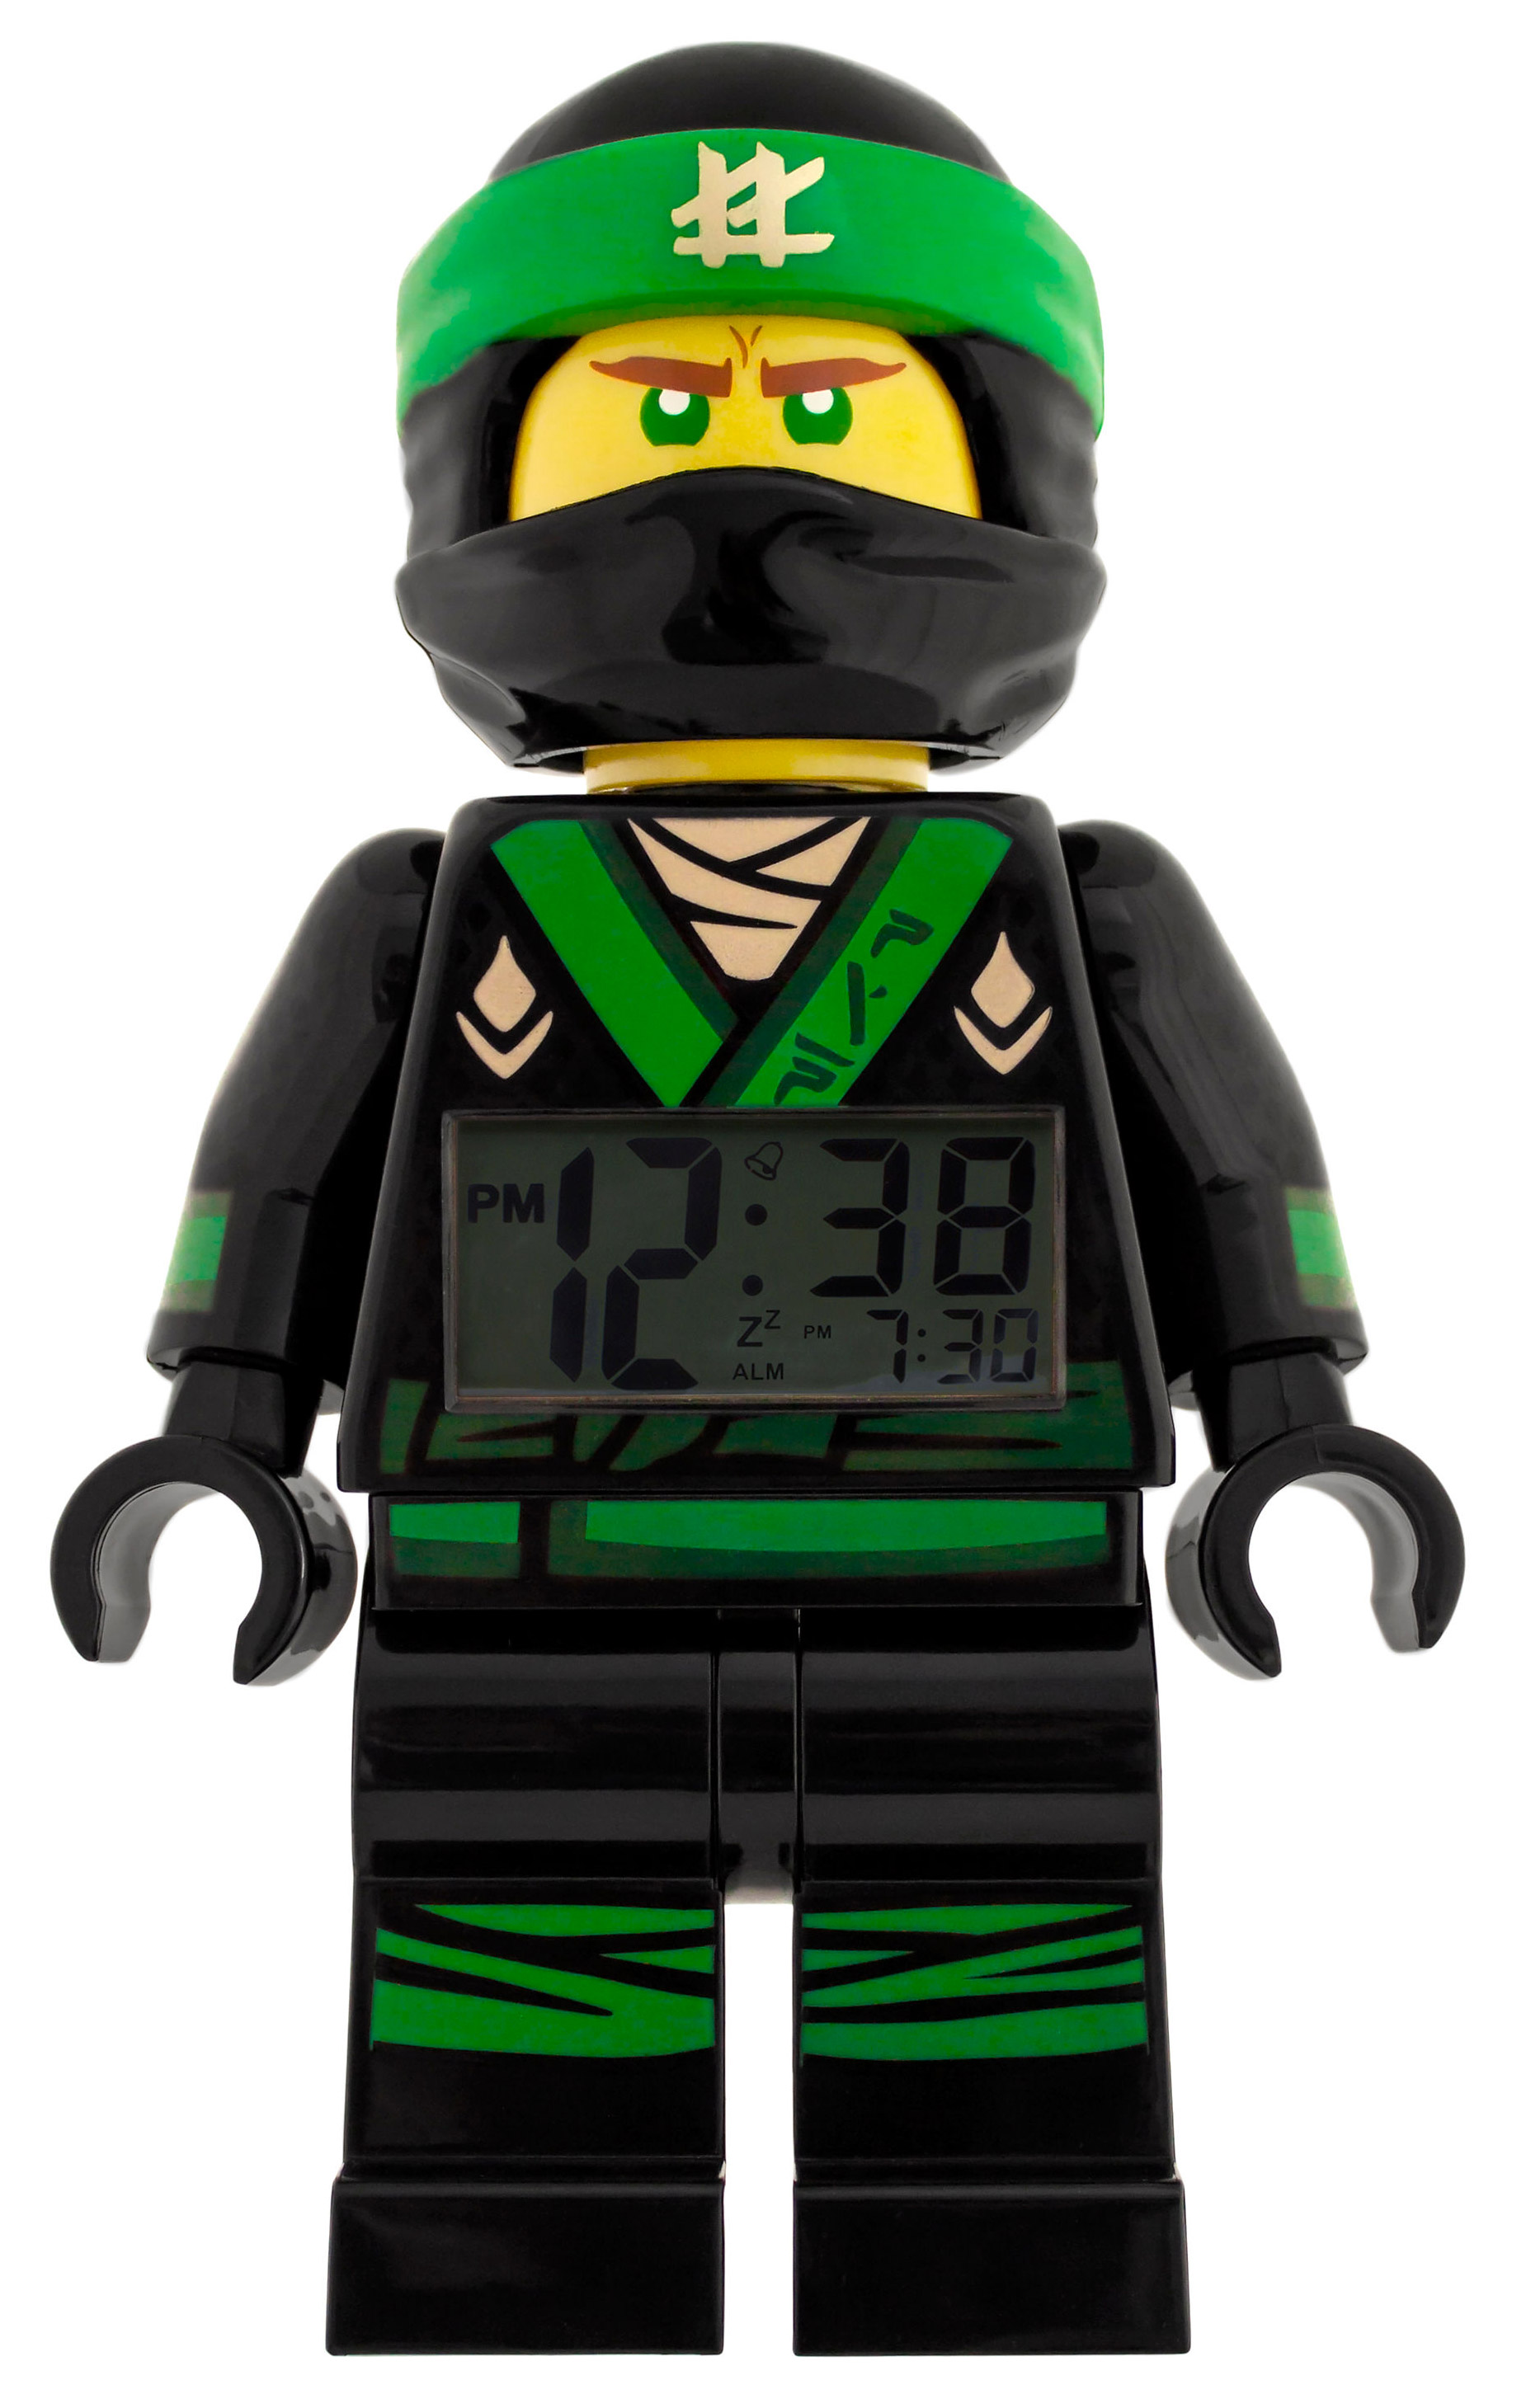 LEGO Horloges & Réveils 5005368 pas cher, Réveil figurine Lloyd de